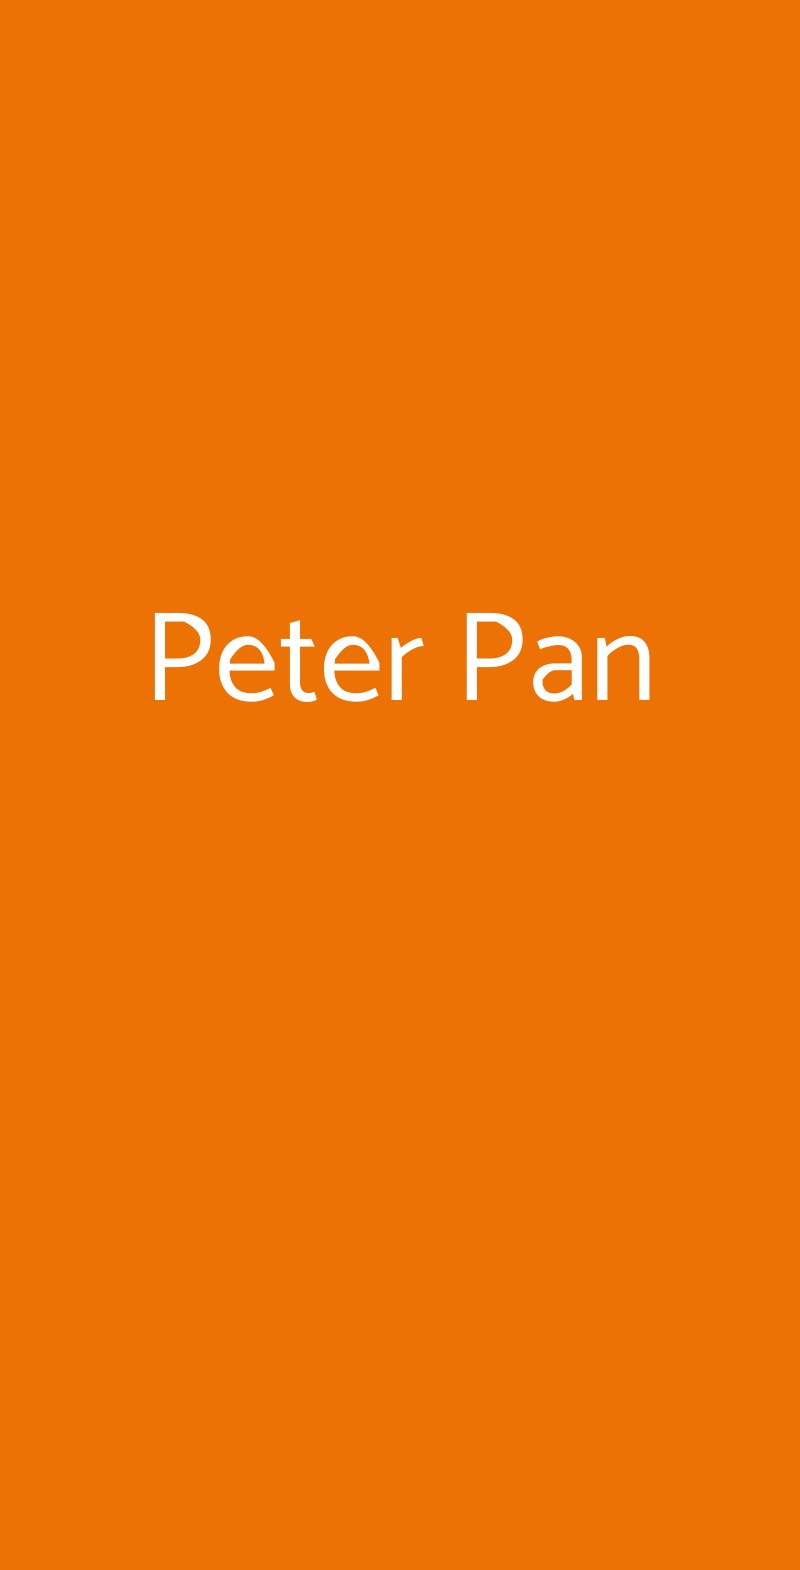 Peter Pan Milano menù 1 pagina